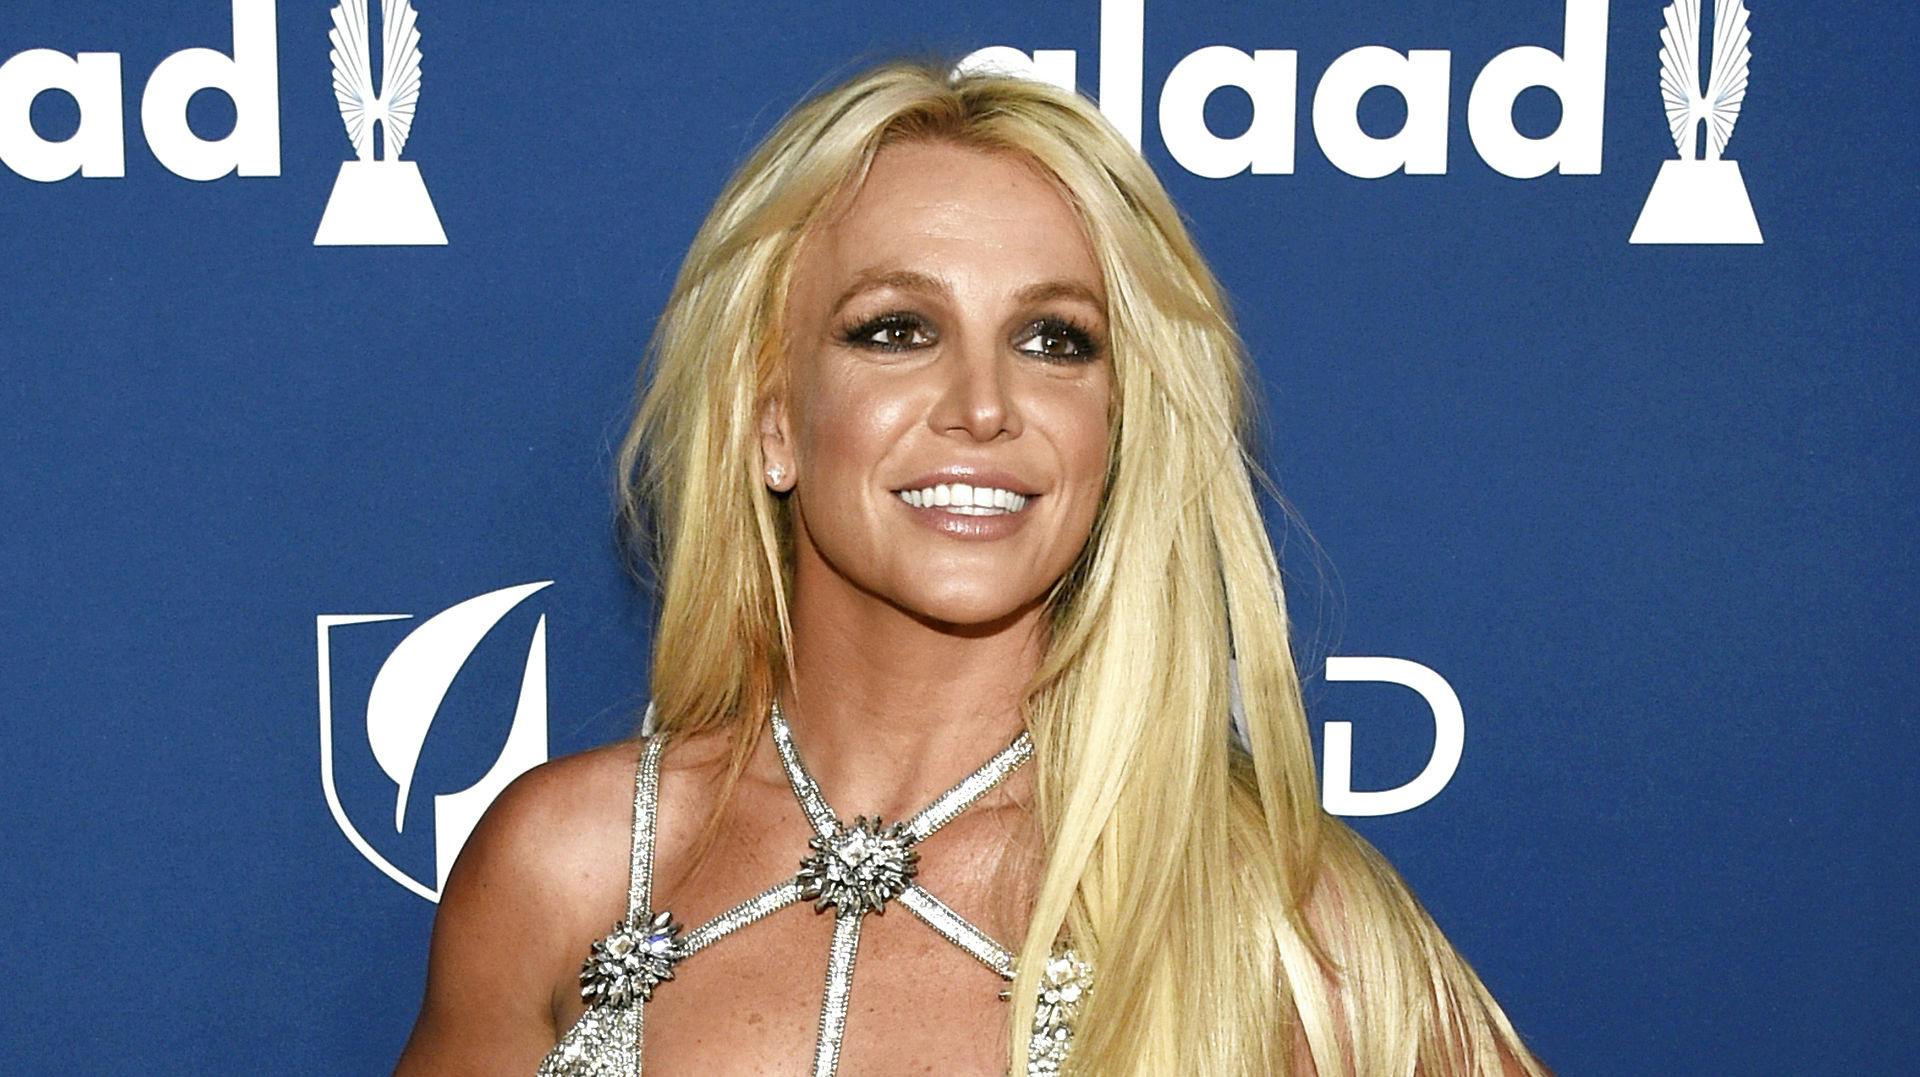 Britney Spears i april 2018, mens hun stadig var underlagt det kontroversielle værgemål, der i dag betyder, at hun er i krig med sin familie.